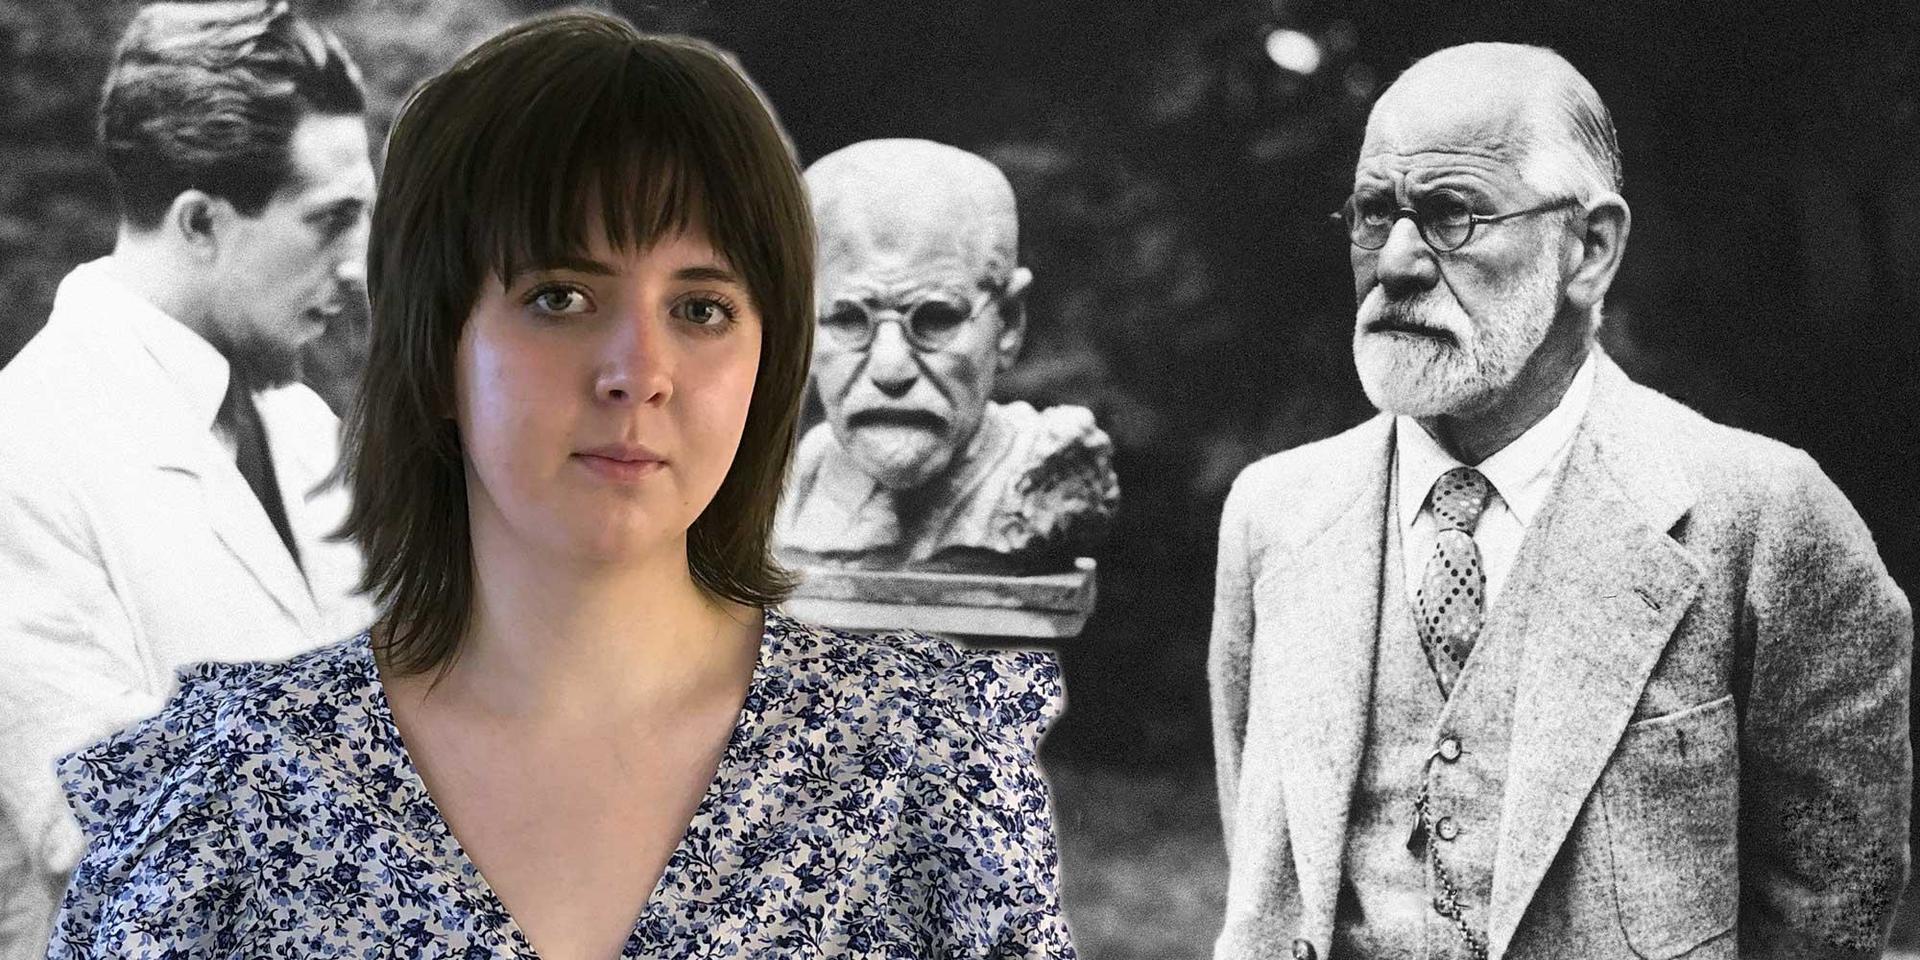 Gamla teorier med begränsad empiriskt stöd lärs fortfarande ut på svenska universitet. Här ser vi Sigmund Freud med skulptören Oscar Nemon. 